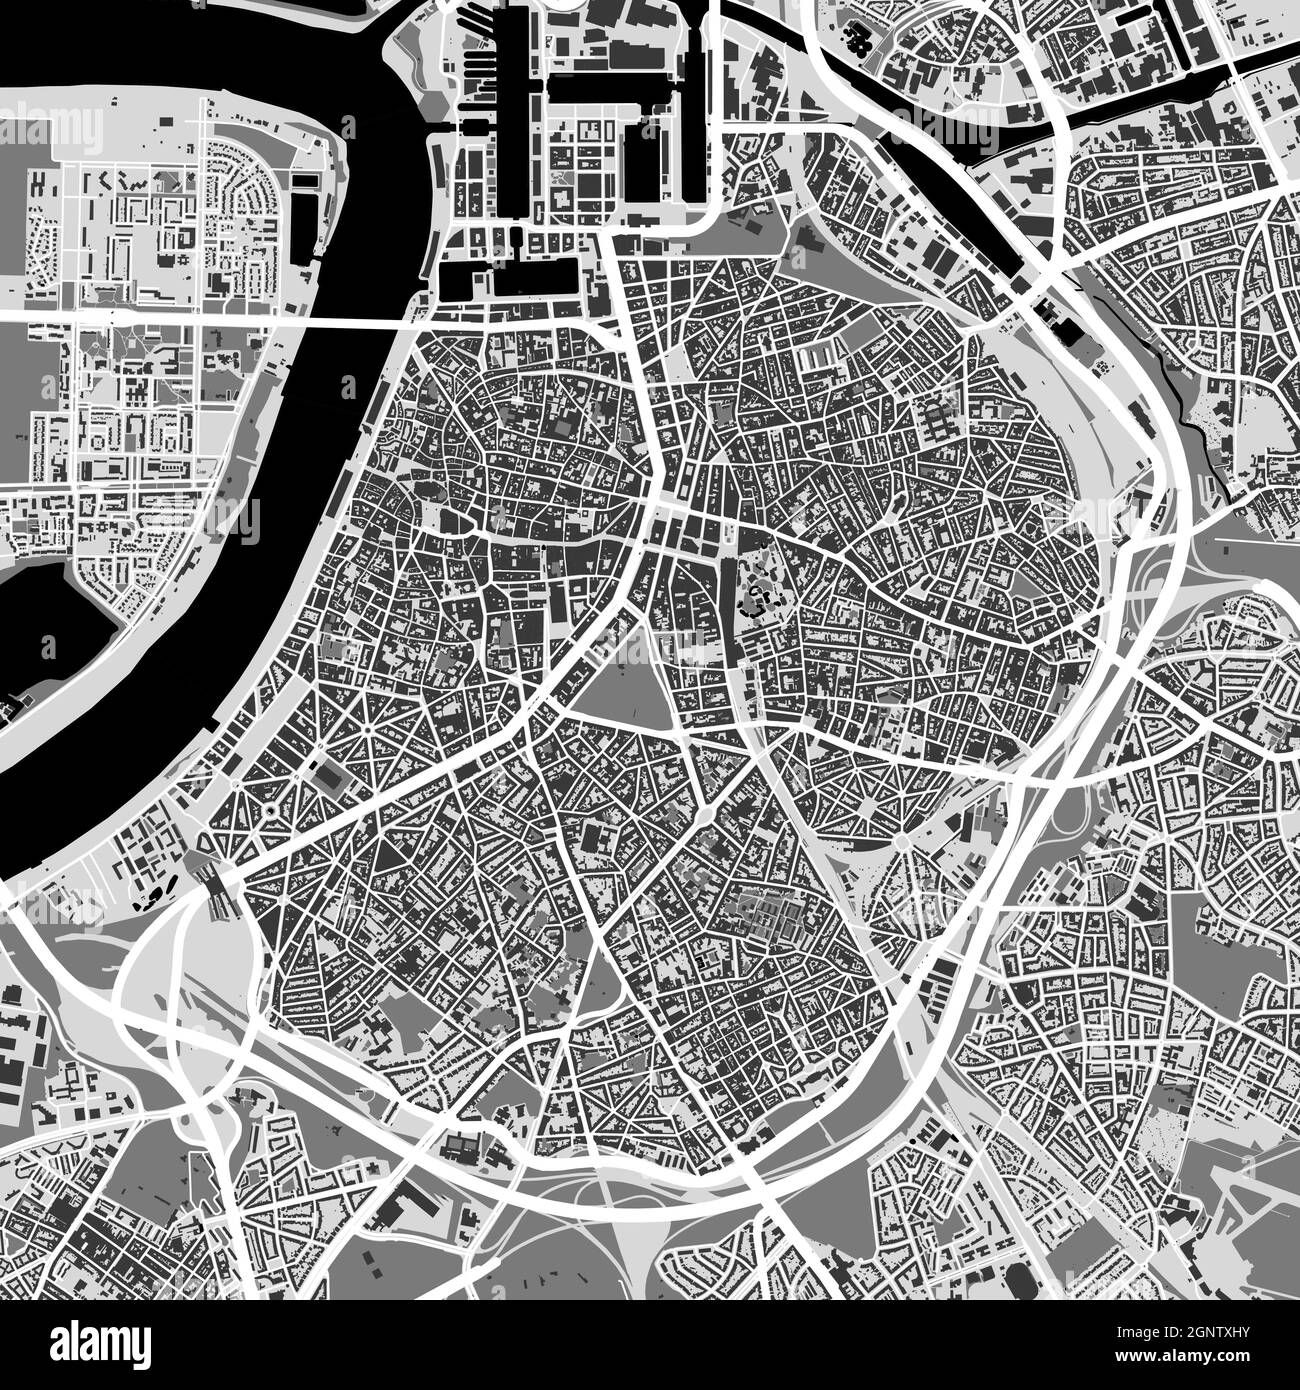 Stadtplan von Antwerpen. Vektorgrafik, Antwerpen Karte Graustufen Kunstposter. Straßenkarte mit Straßen, Ansicht der Metropolregion. Stock Vektor